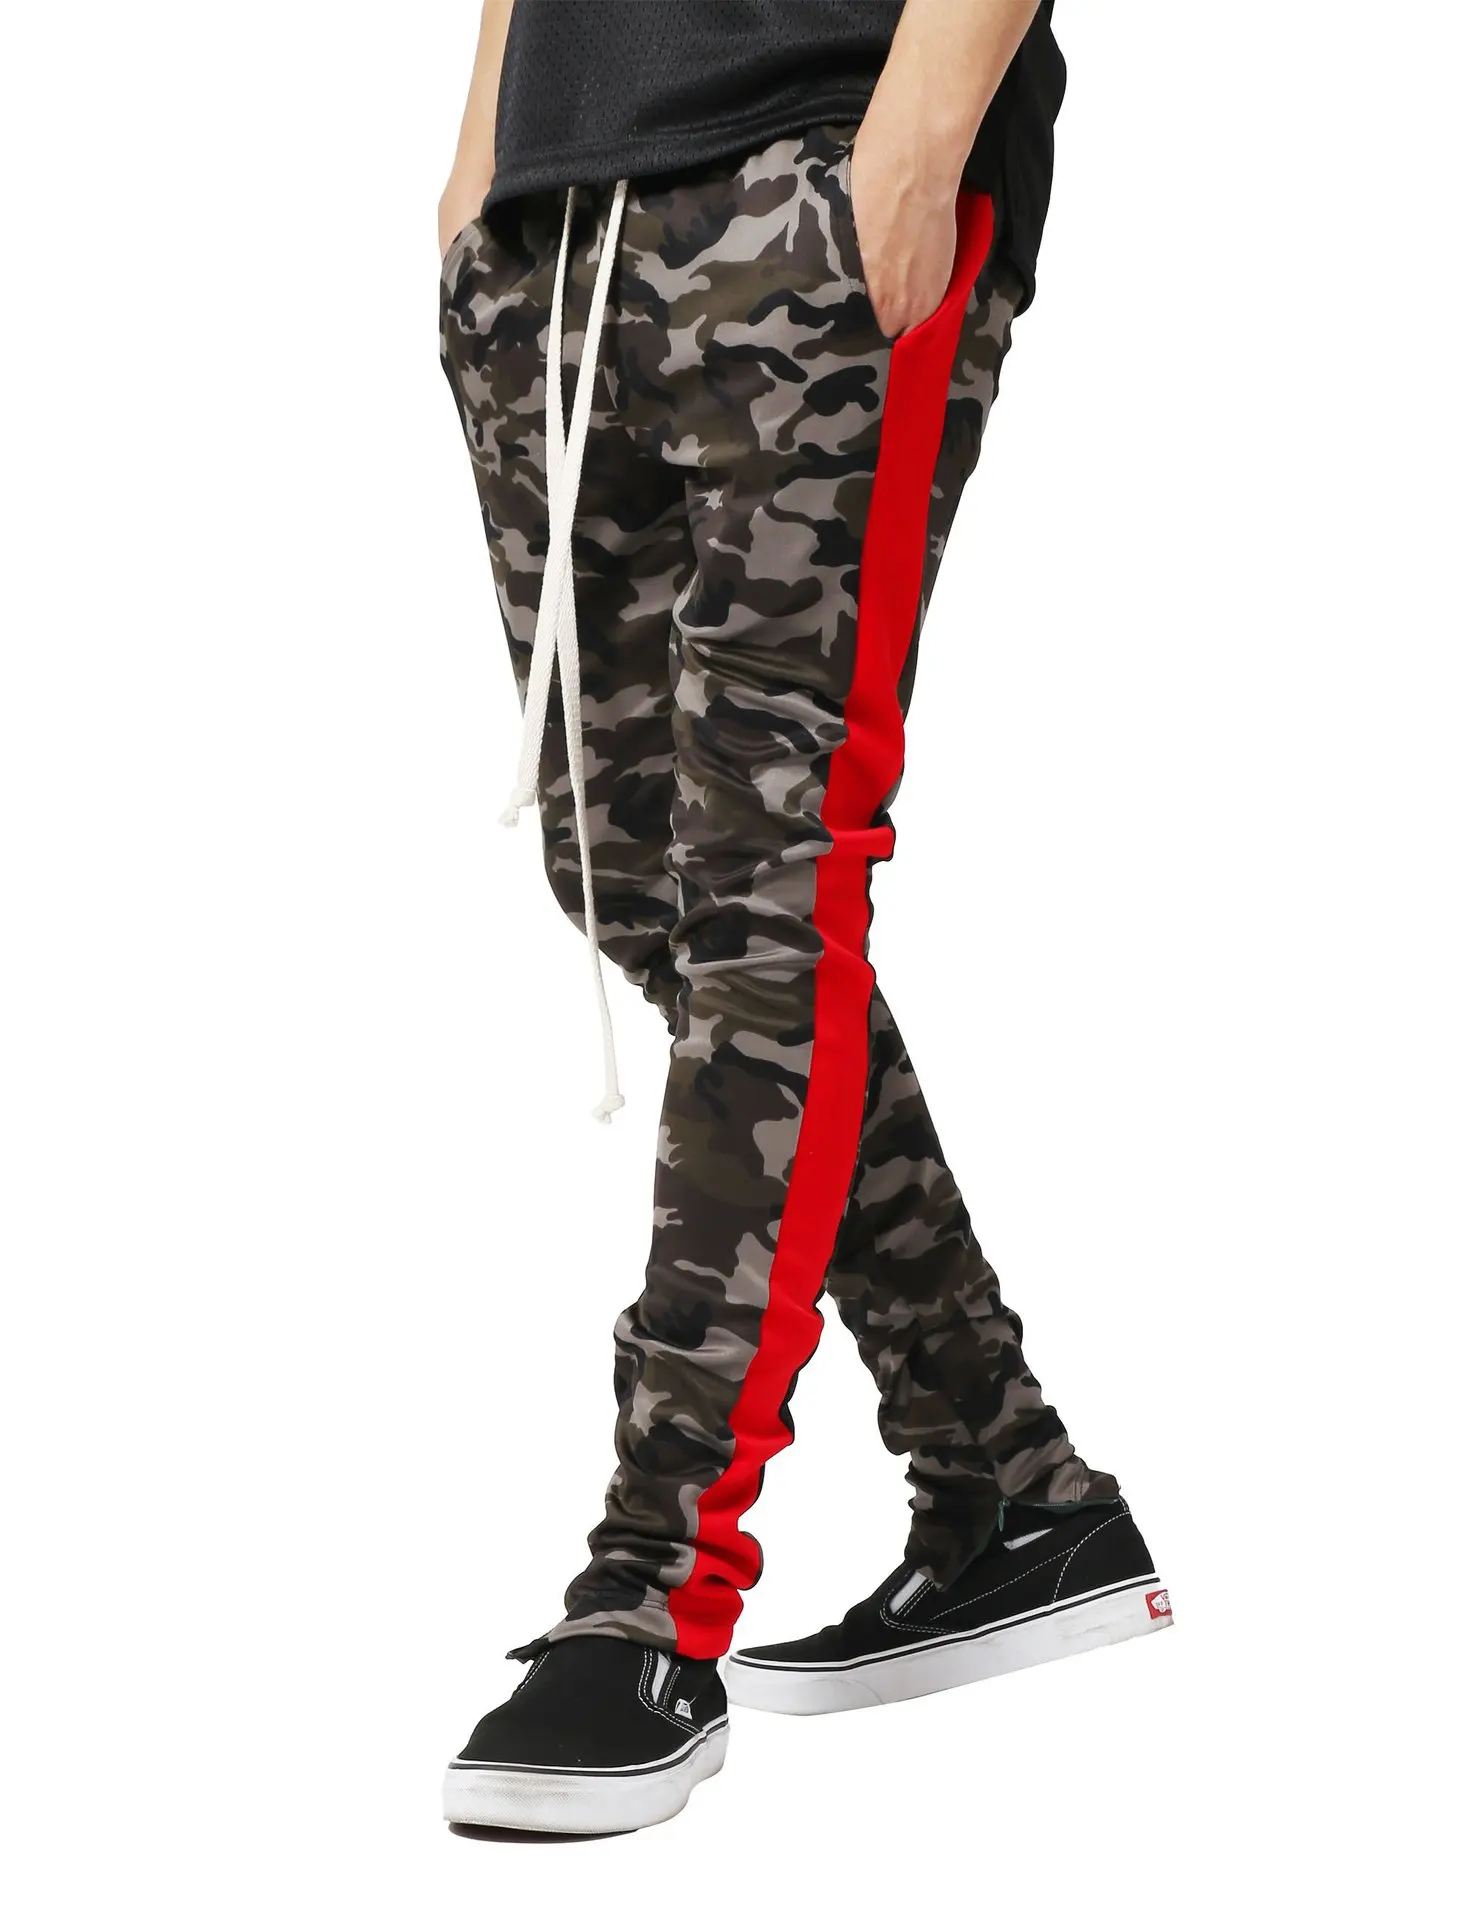 CYSINCOS осенние Брендовые мужские Модные Военные Брюки карго с несколькими карманами, мешковатые мужские брюки, повседневные брюки, комбинезоны, камуфляжные штаны